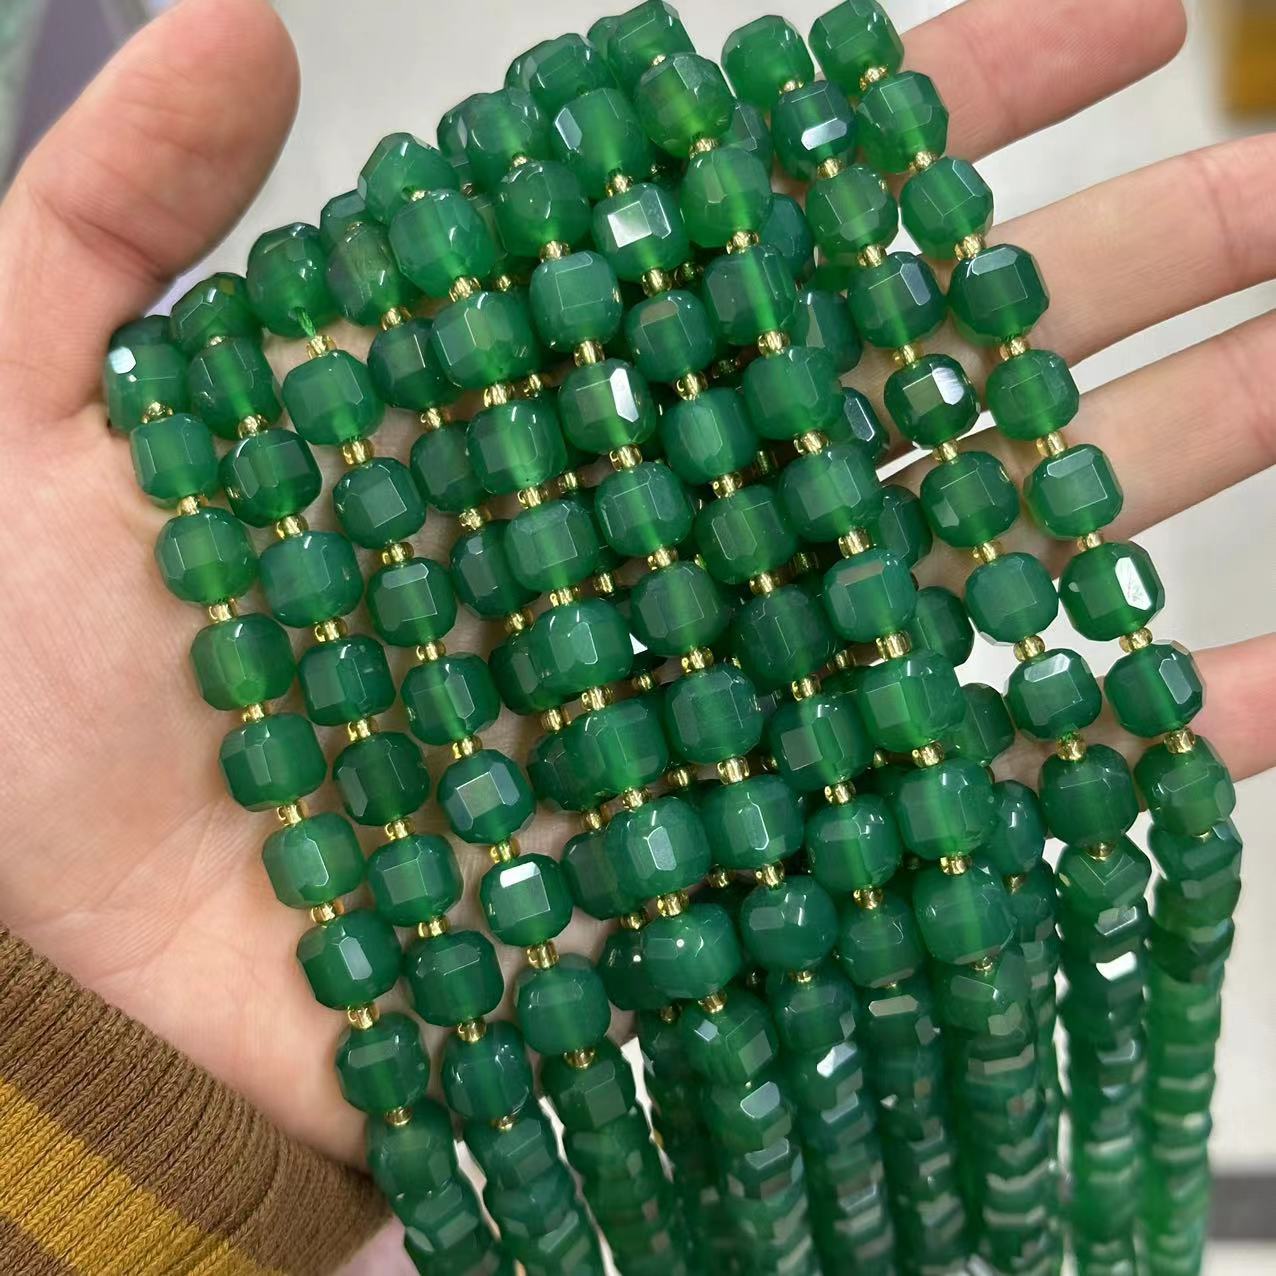 14 green agate